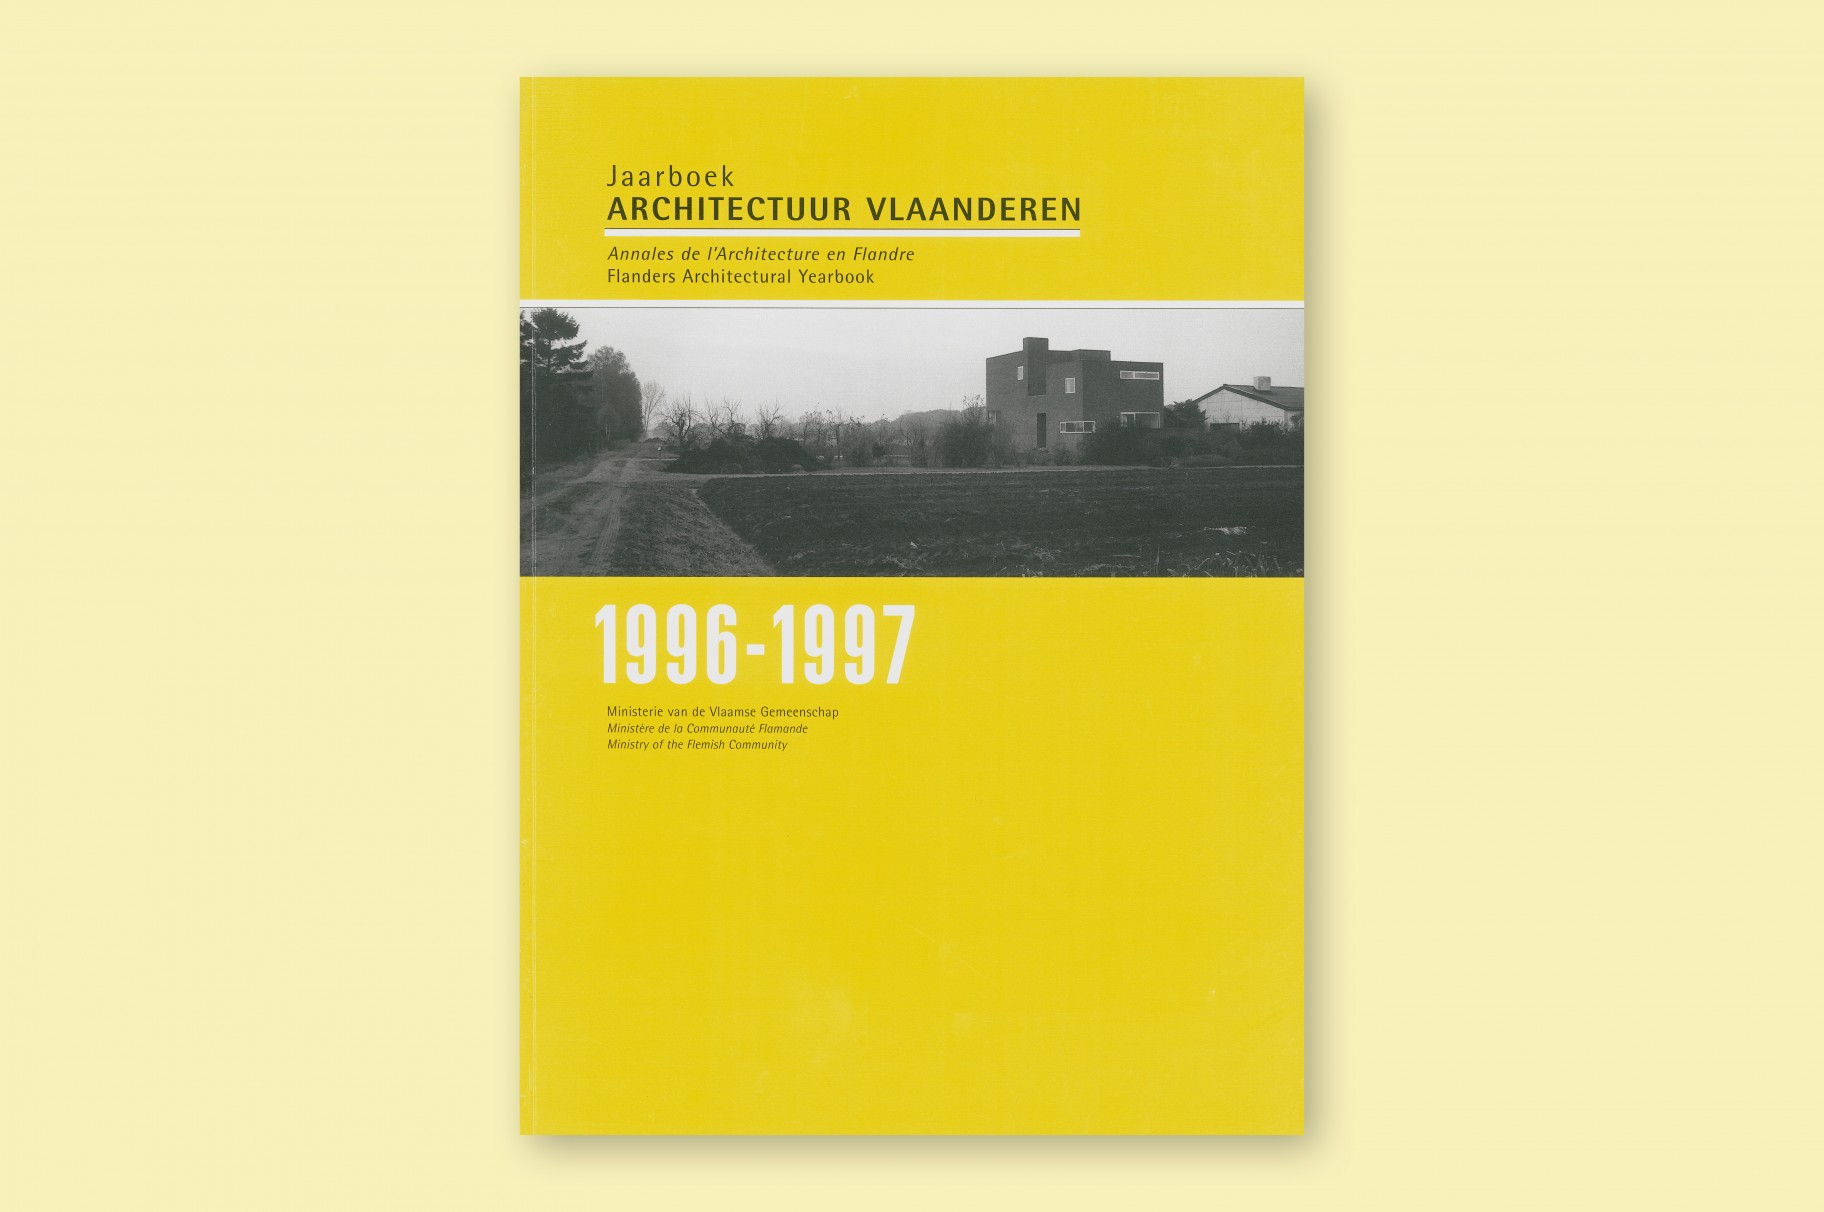 Elektro Loeters Oostende in Jaarboek Architectuur Vlaanderen 1996-1997